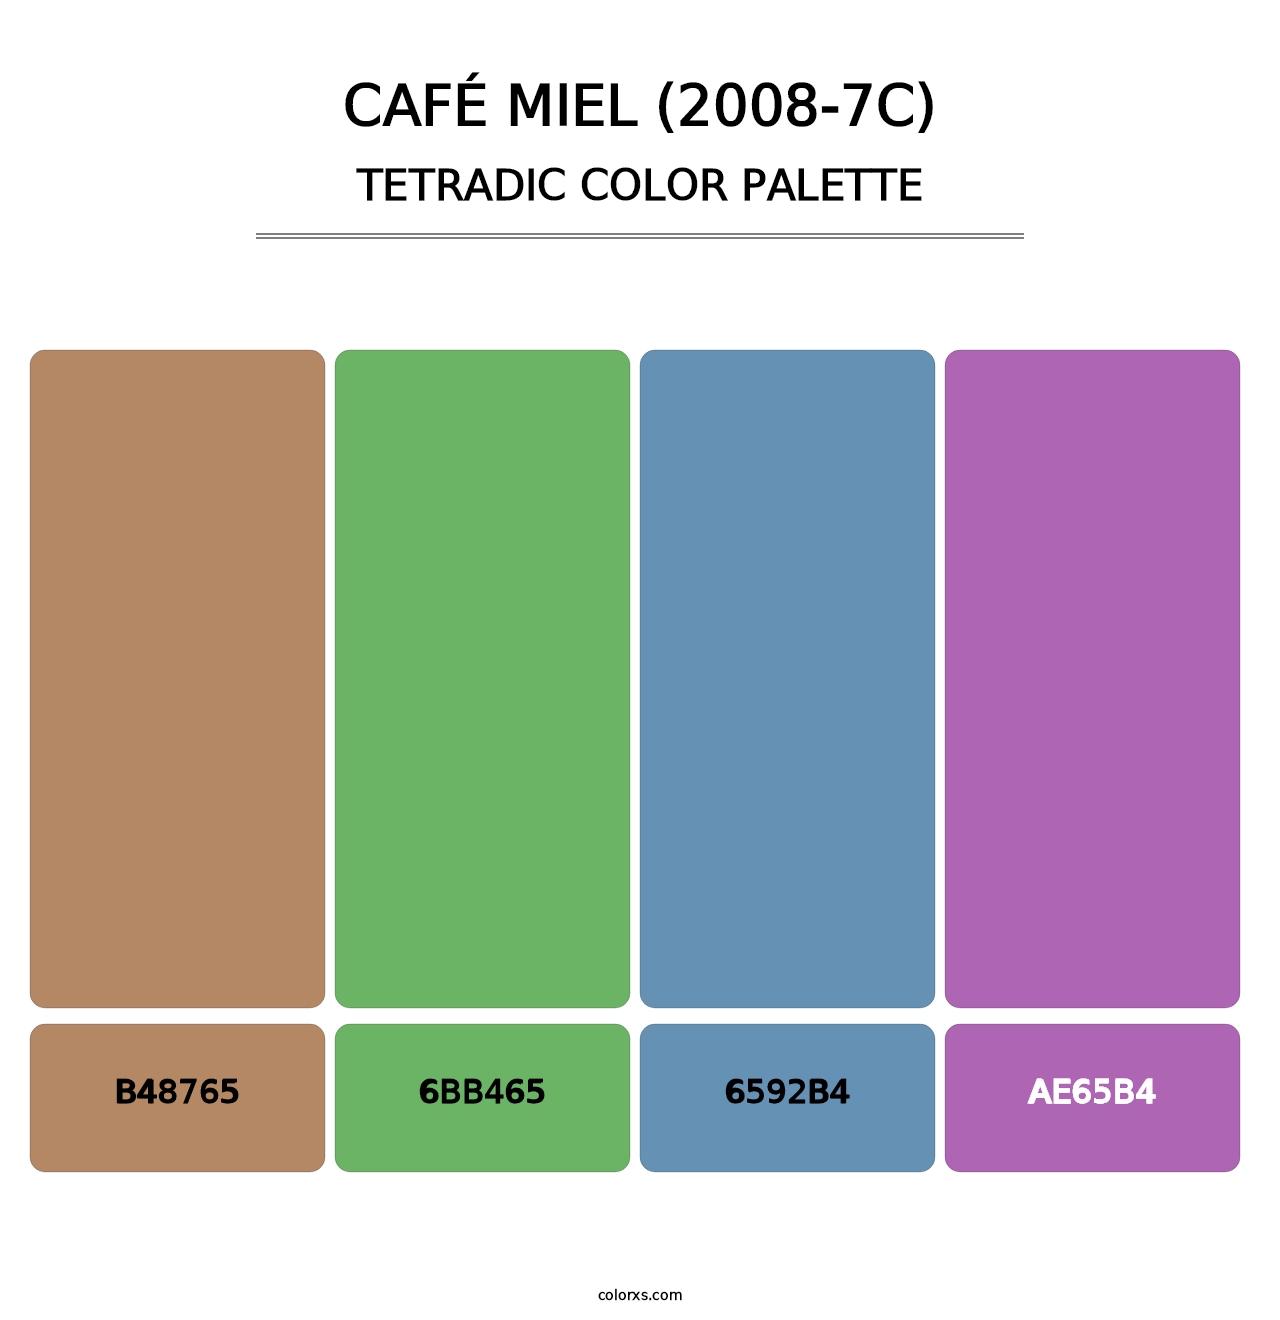 Café Miel (2008-7C) - Tetradic Color Palette